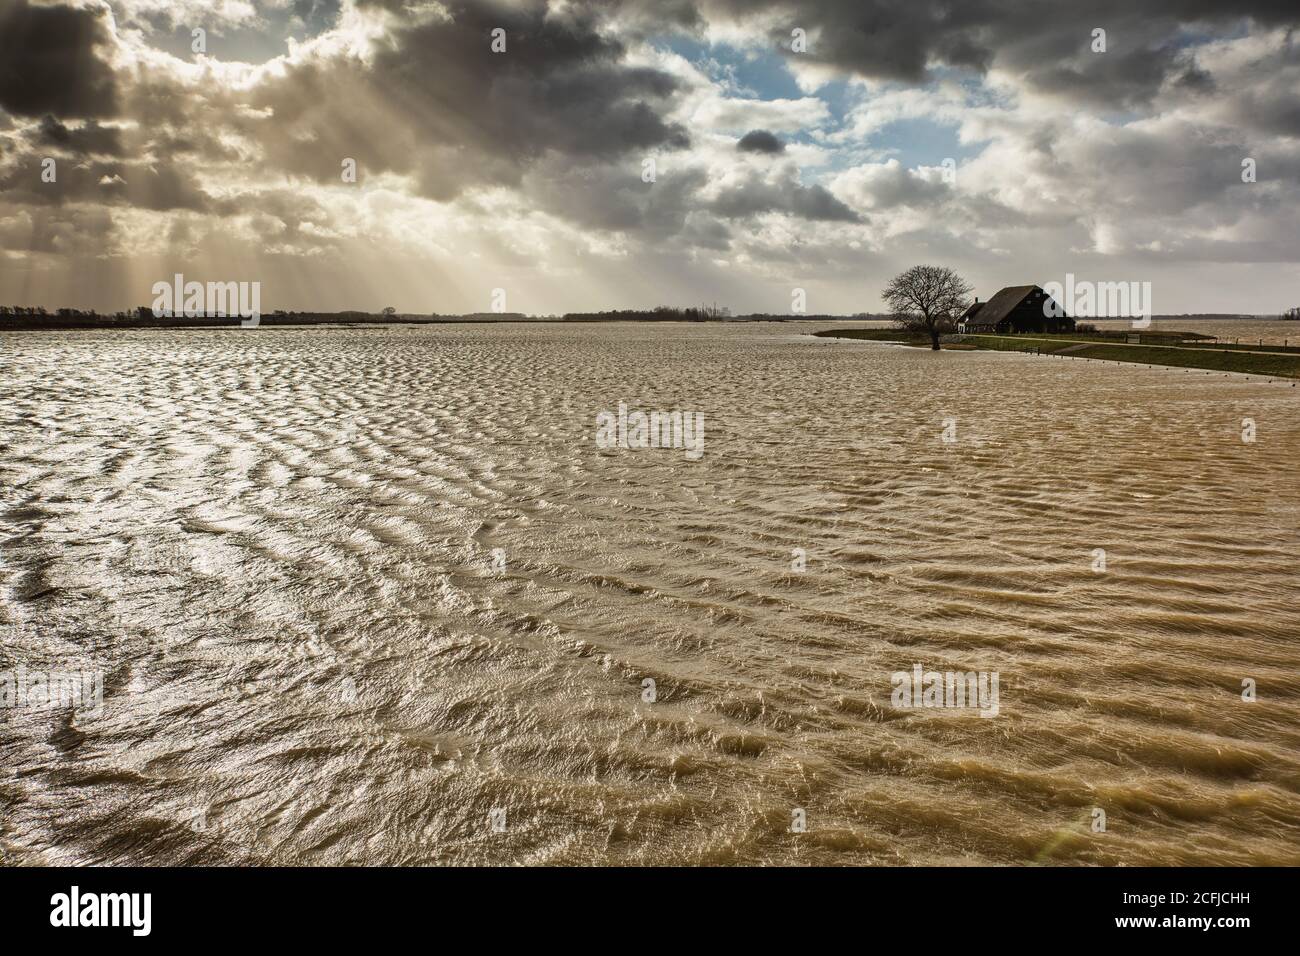 Niederlande, Werkendam, Nationalpark De Biesbosch. Absichtliche Überschwemmung des Polders Noordwaard. Raum für das River-Projekt. Isolierte Farm. Stockfoto